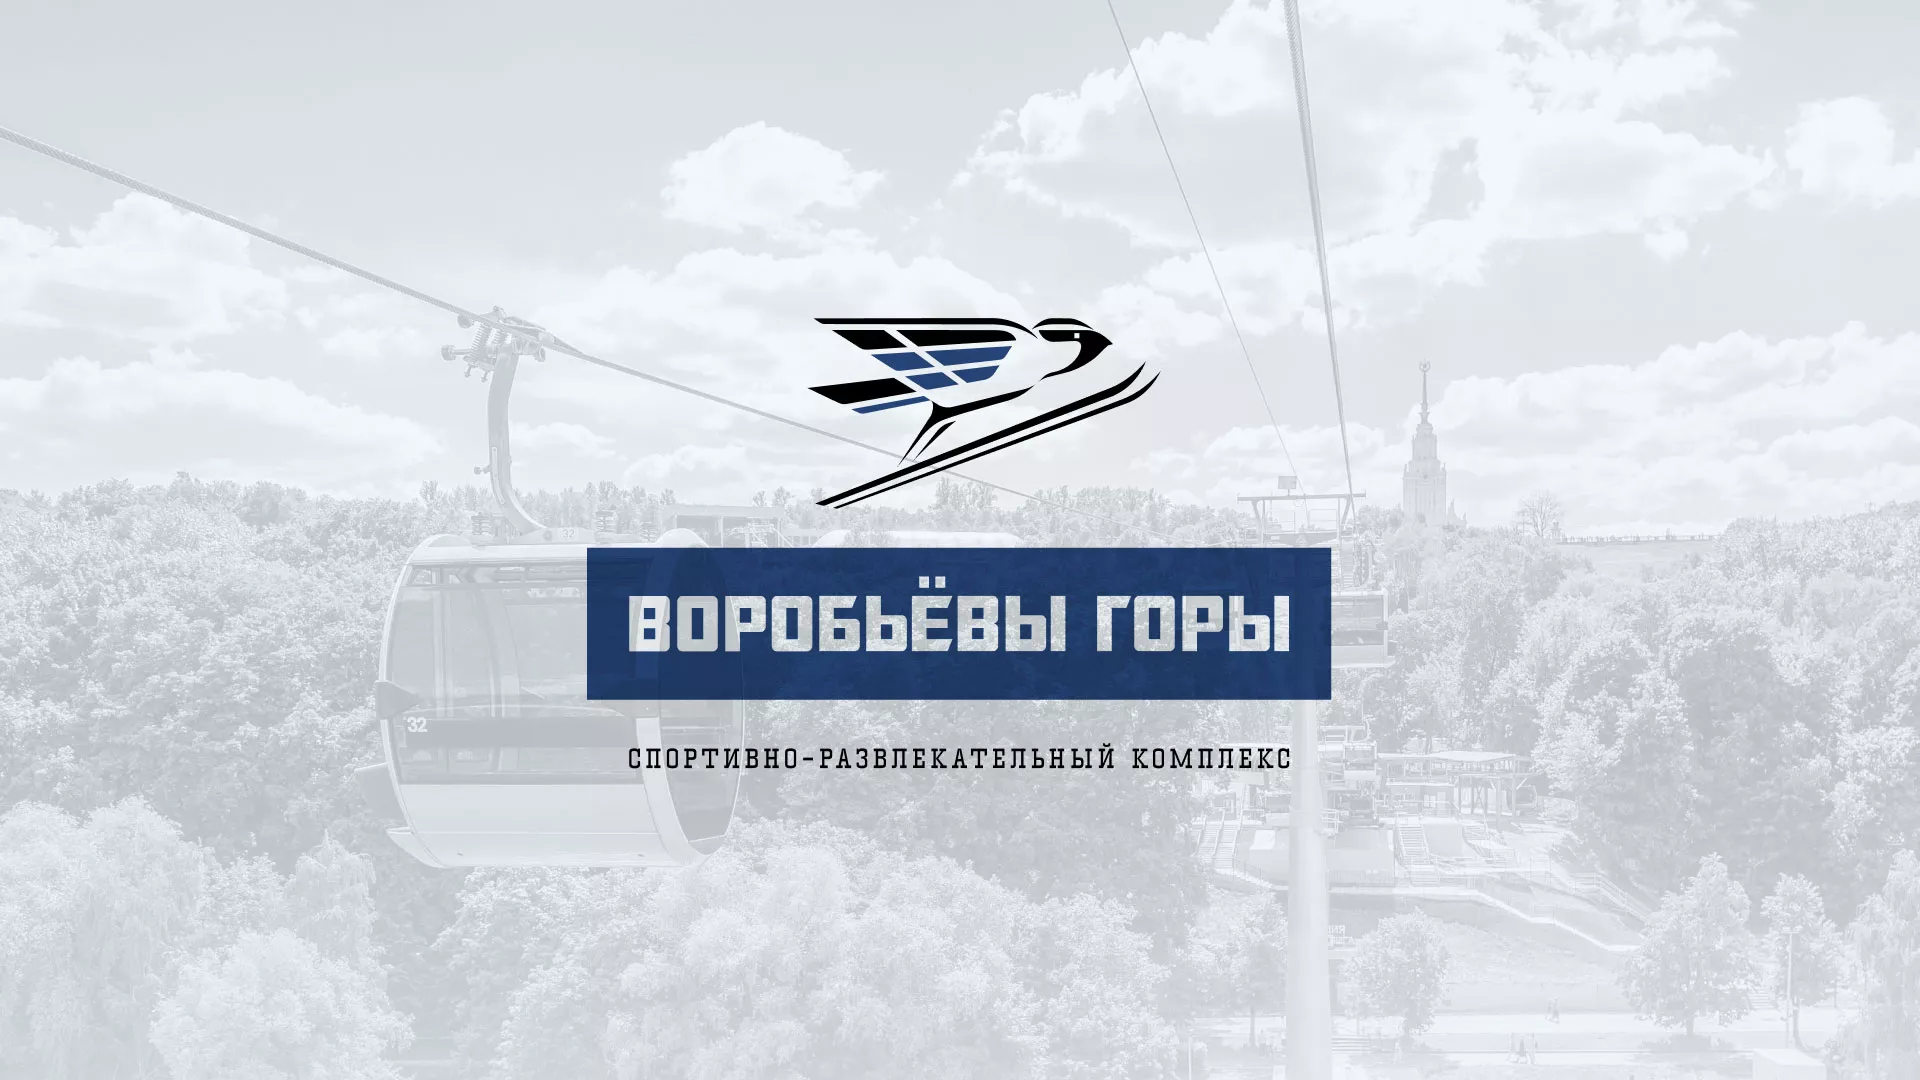 Разработка сайта в Далматово для спортивно-развлекательного комплекса «Воробьёвы горы»